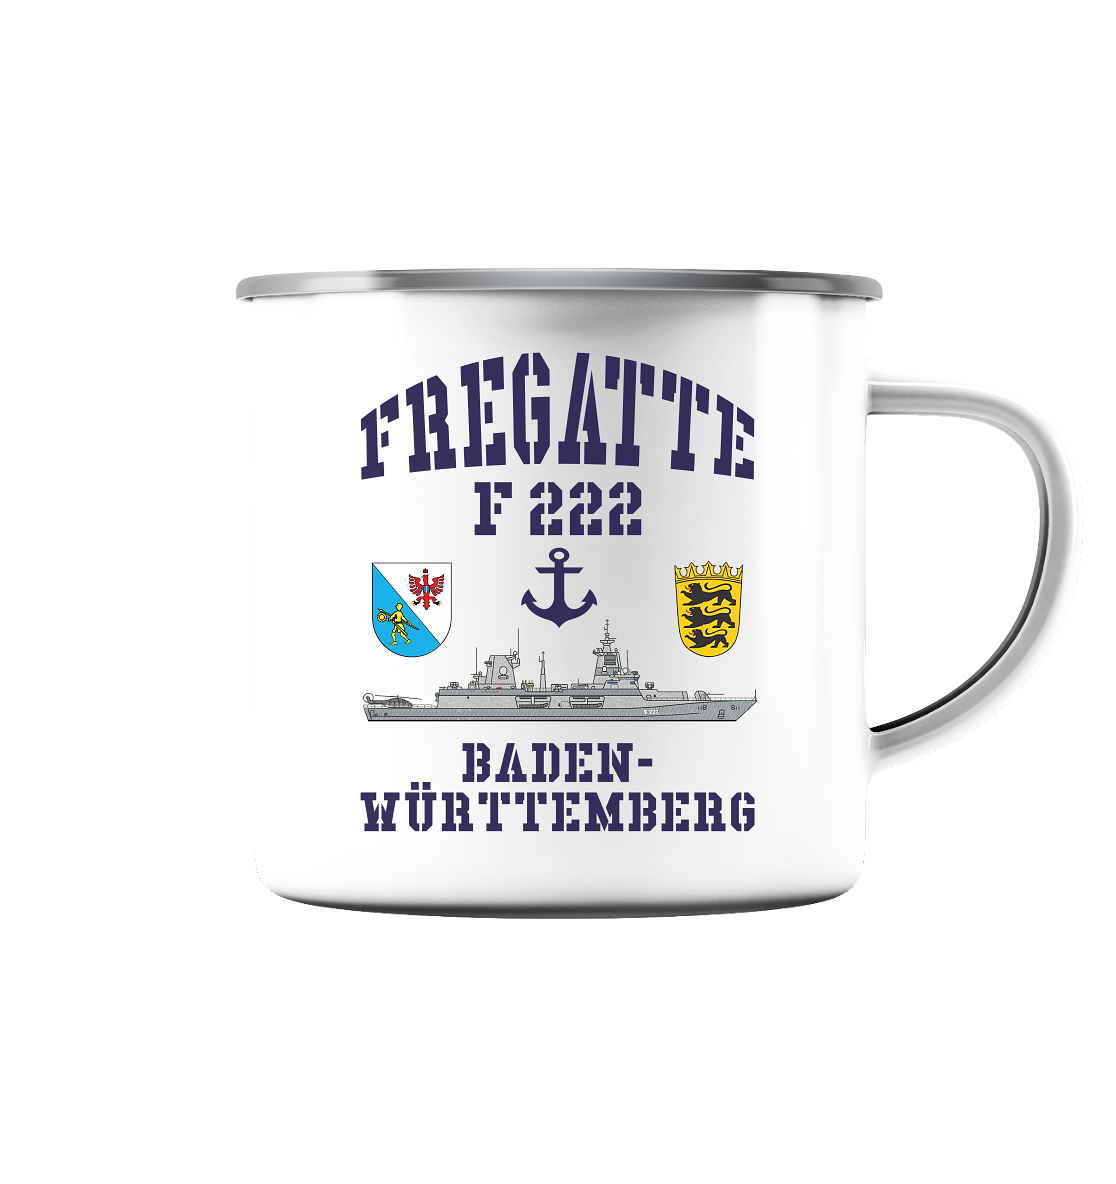 Fregatte F222 BADEN-WÜRTTEMBERG Anker - Emaille Tasse (Silber)